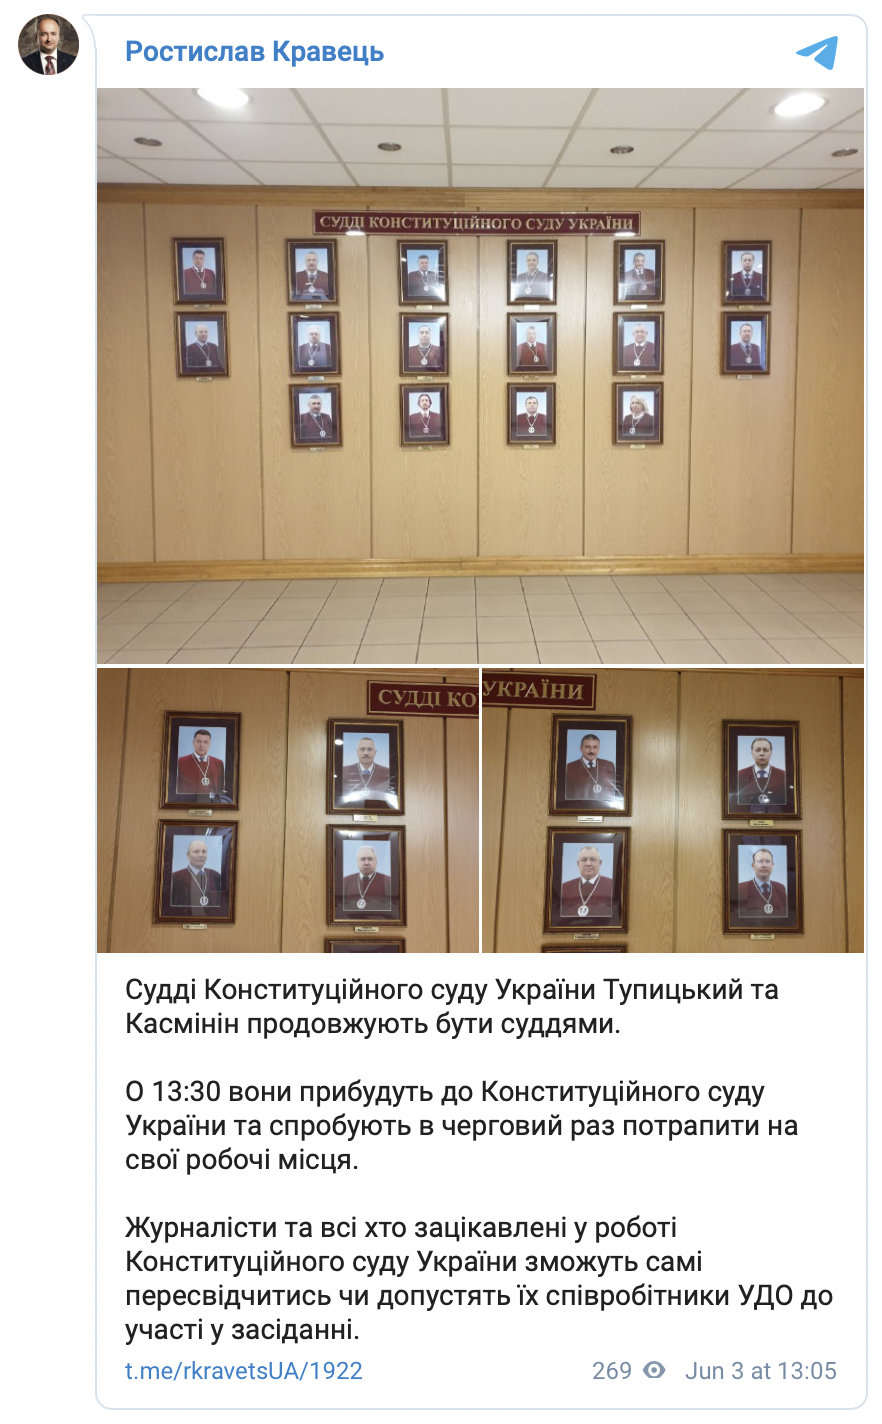 Тупицкий и Касминин сегодня вновь попытаются попасть на рабочие места в Конституционном суде